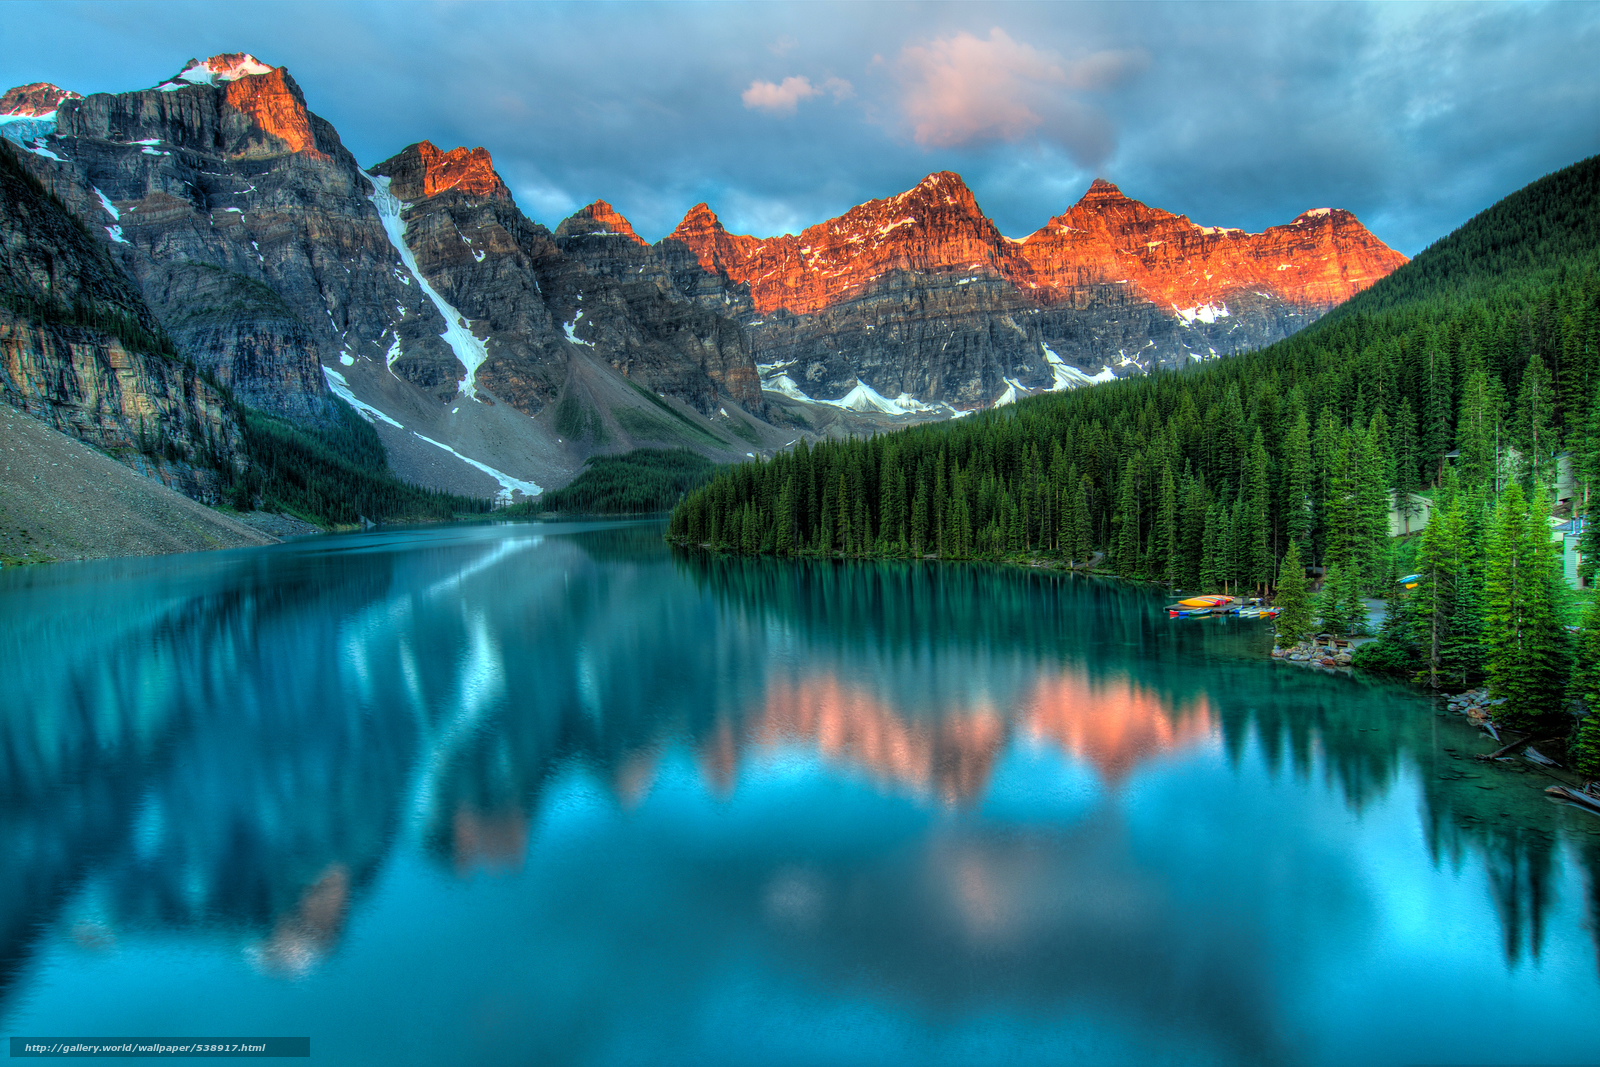 Download wallpaper Moraine Lake Banff National Park Alberta Canada 1600x1067